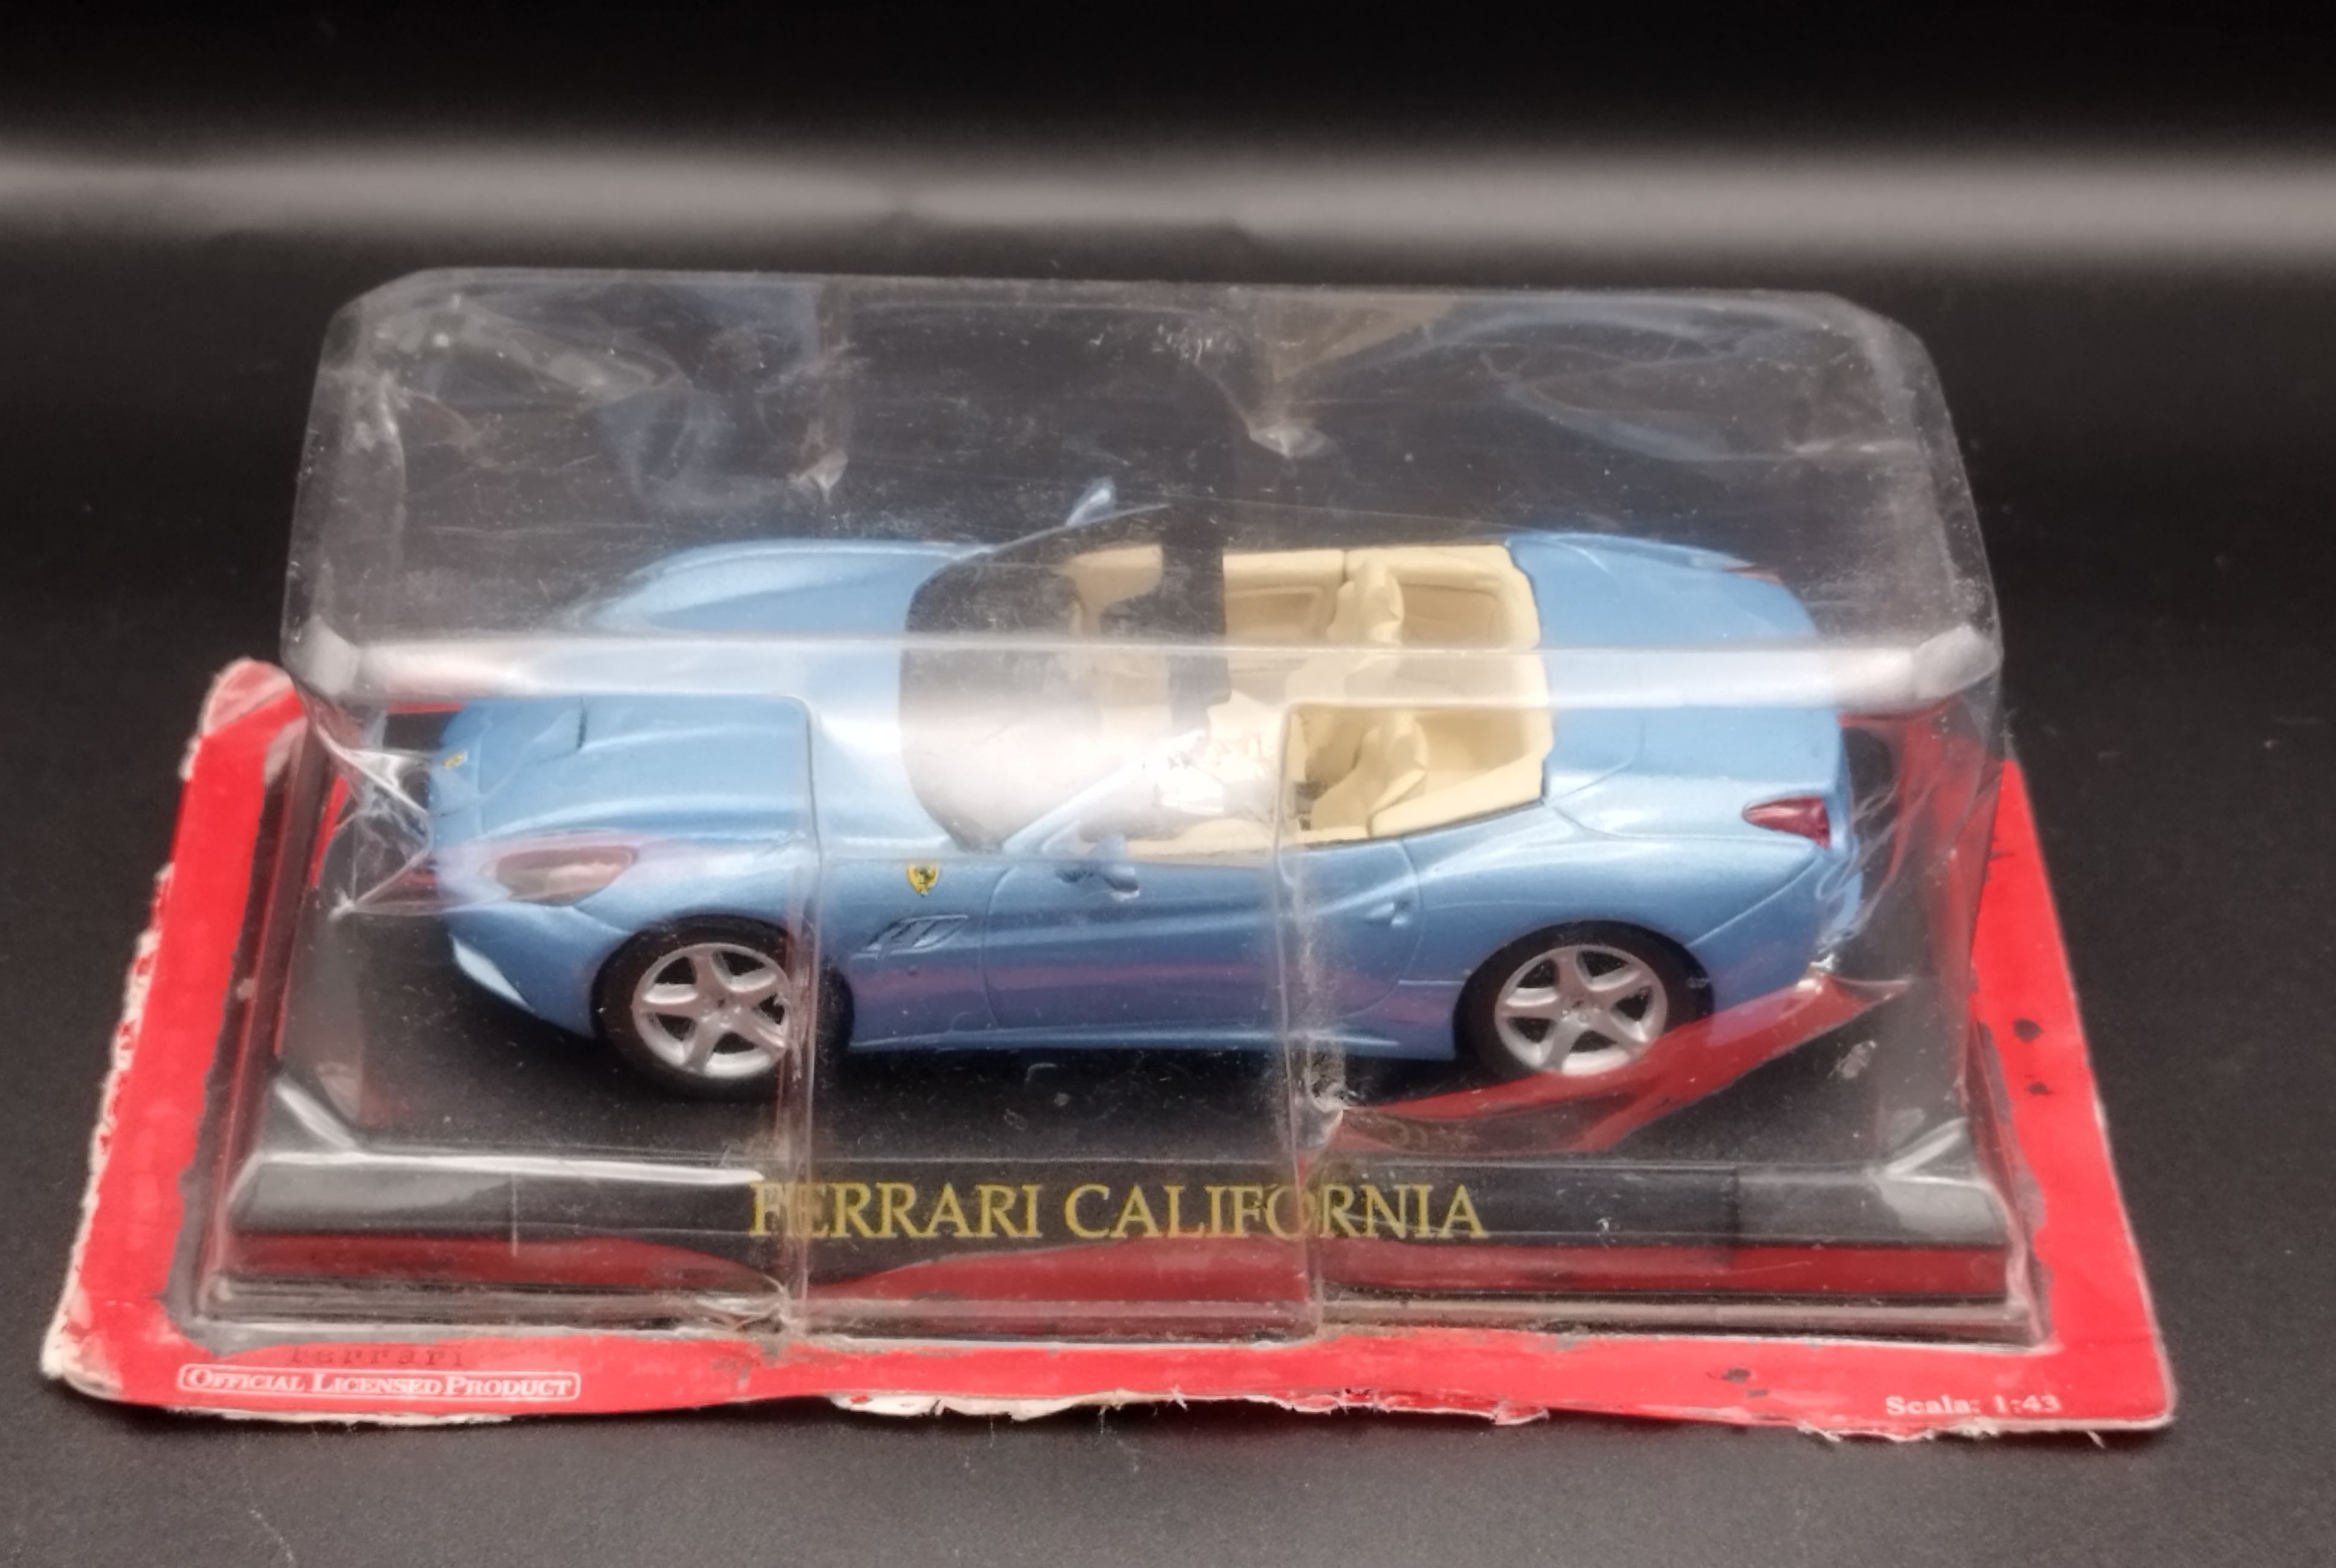 1:43 Altaya Ferrari California Blue model używany